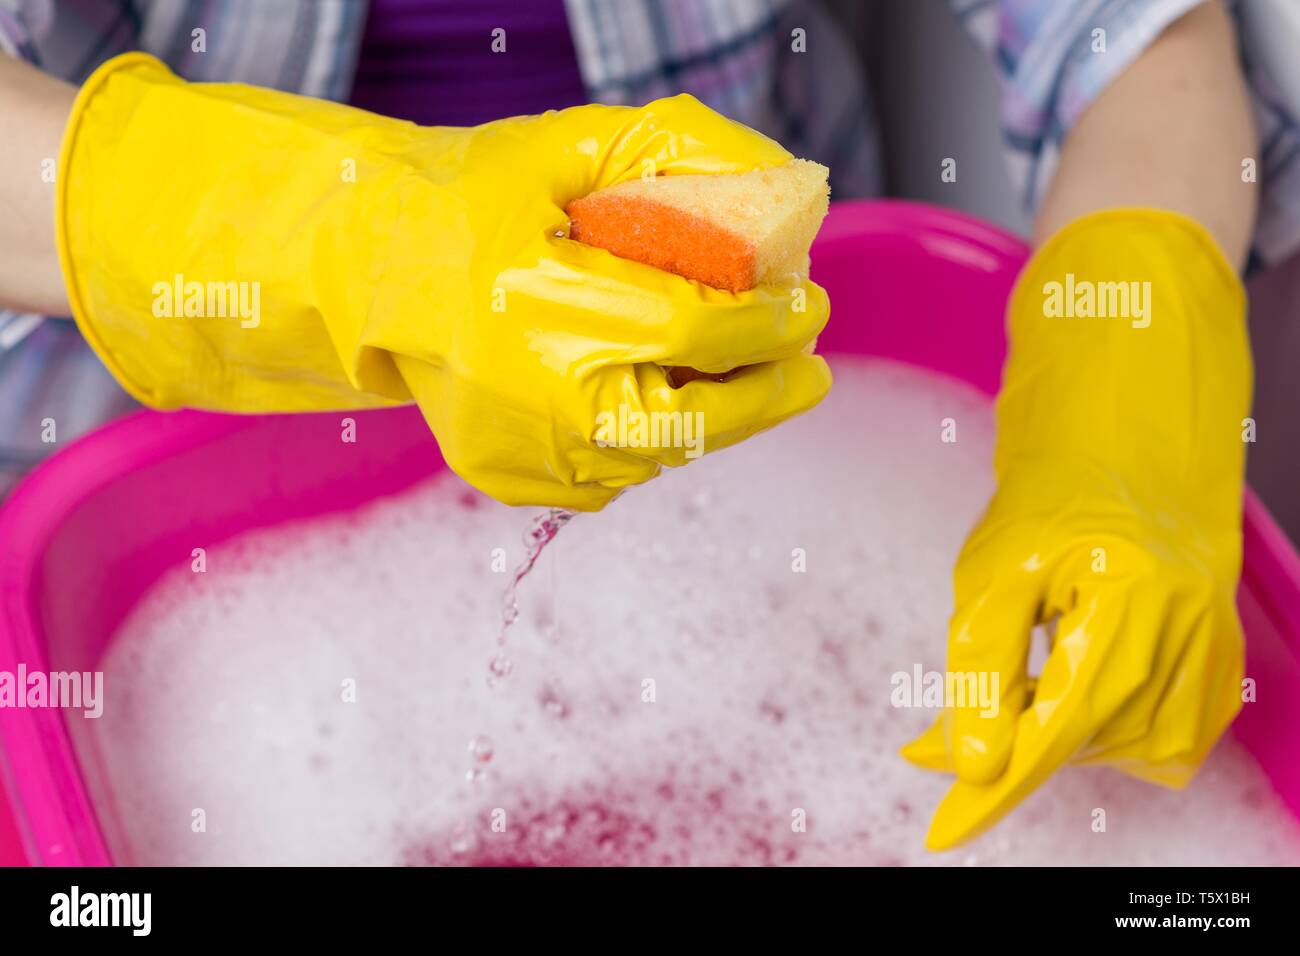 Nettoyage de la maison. Close-up du bassin avec de l'eau savonneuse, les mains dans les gants de protection en caoutchouc avec éponge Banque D'Images